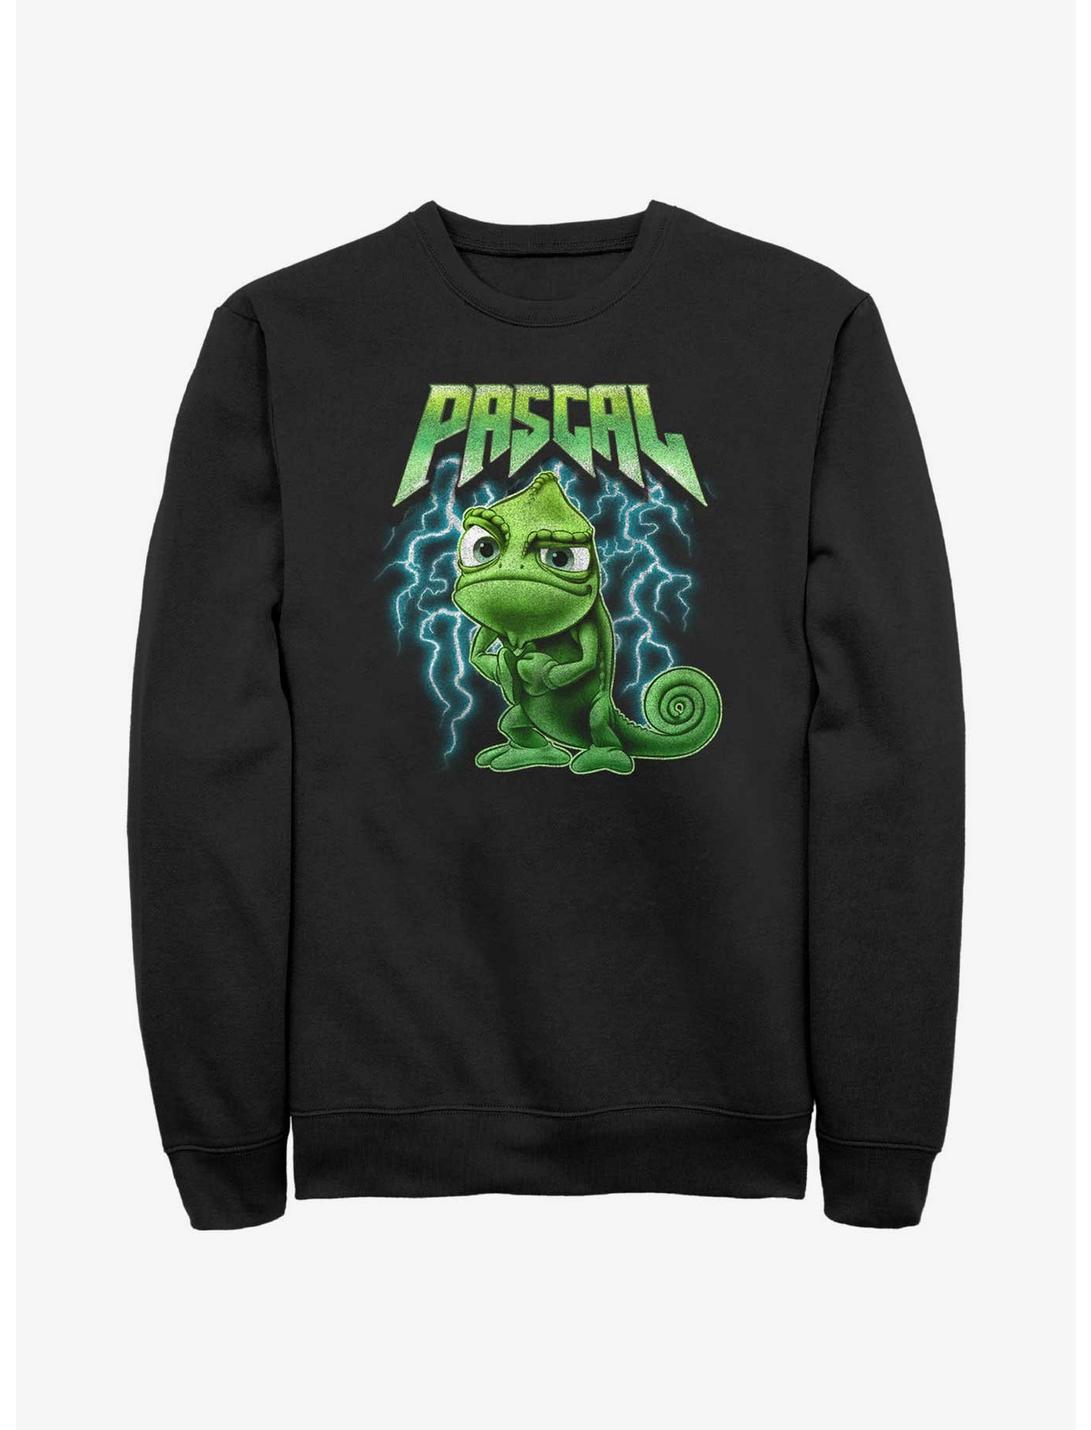 Disney Tangled Pascal Metal Sweatshirt, BLACK, hi-res